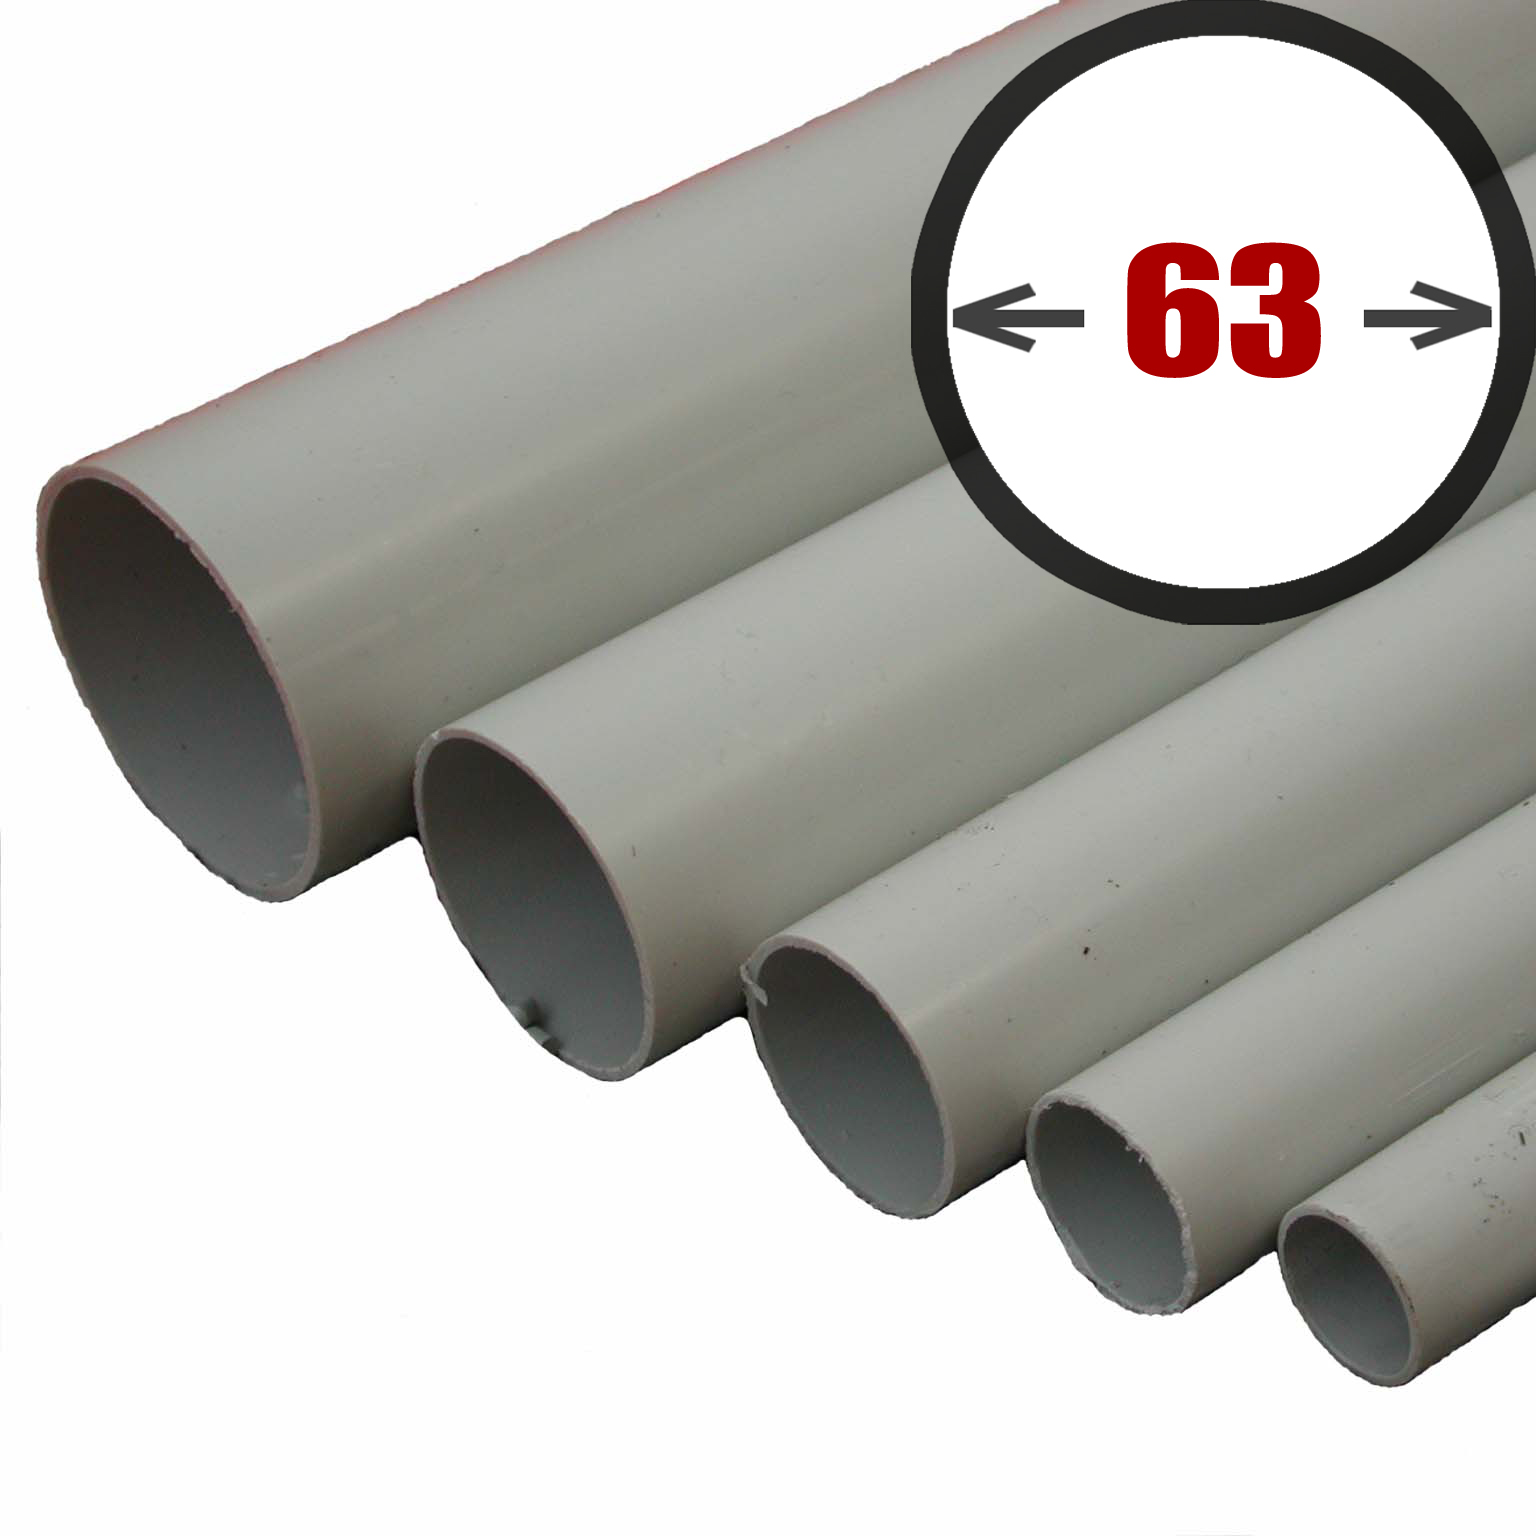 PVC Pipes 63 mm 6PN, 6 m code 35028